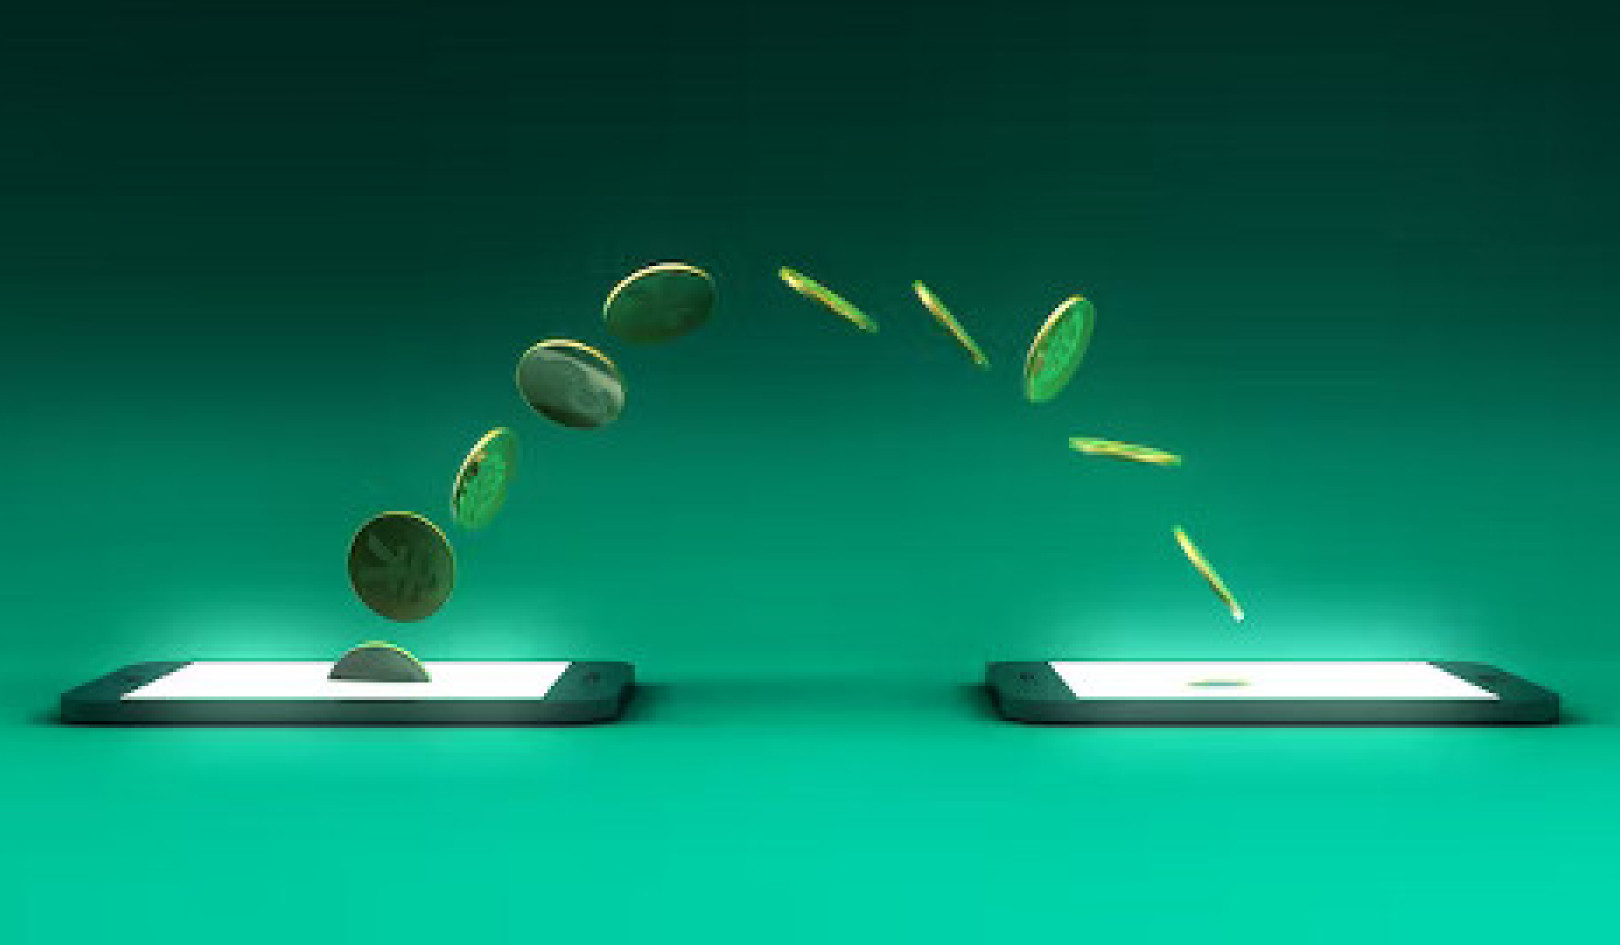 Comment l'argent numérique a changé notre façon de vivre